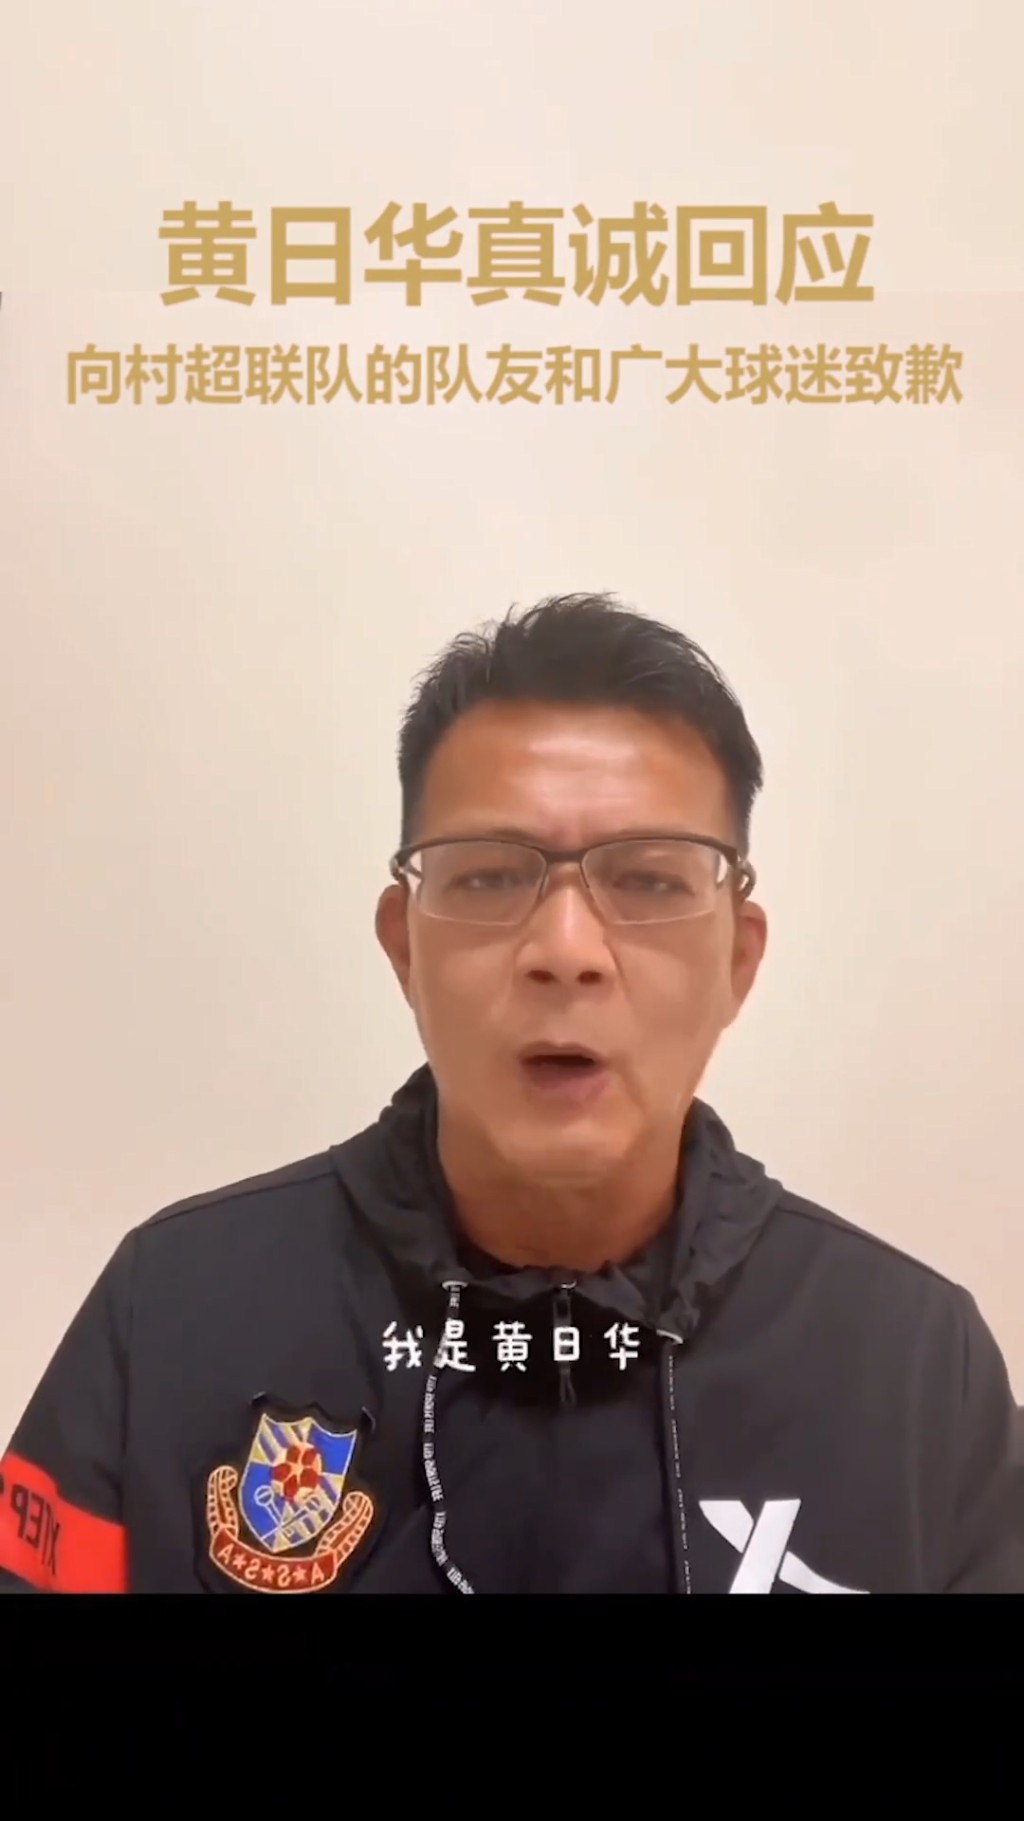 黃日華曾因比賽時怒踢對手被批評，最終在「明星足球隊」的官方抖音賬號拍片道歉。